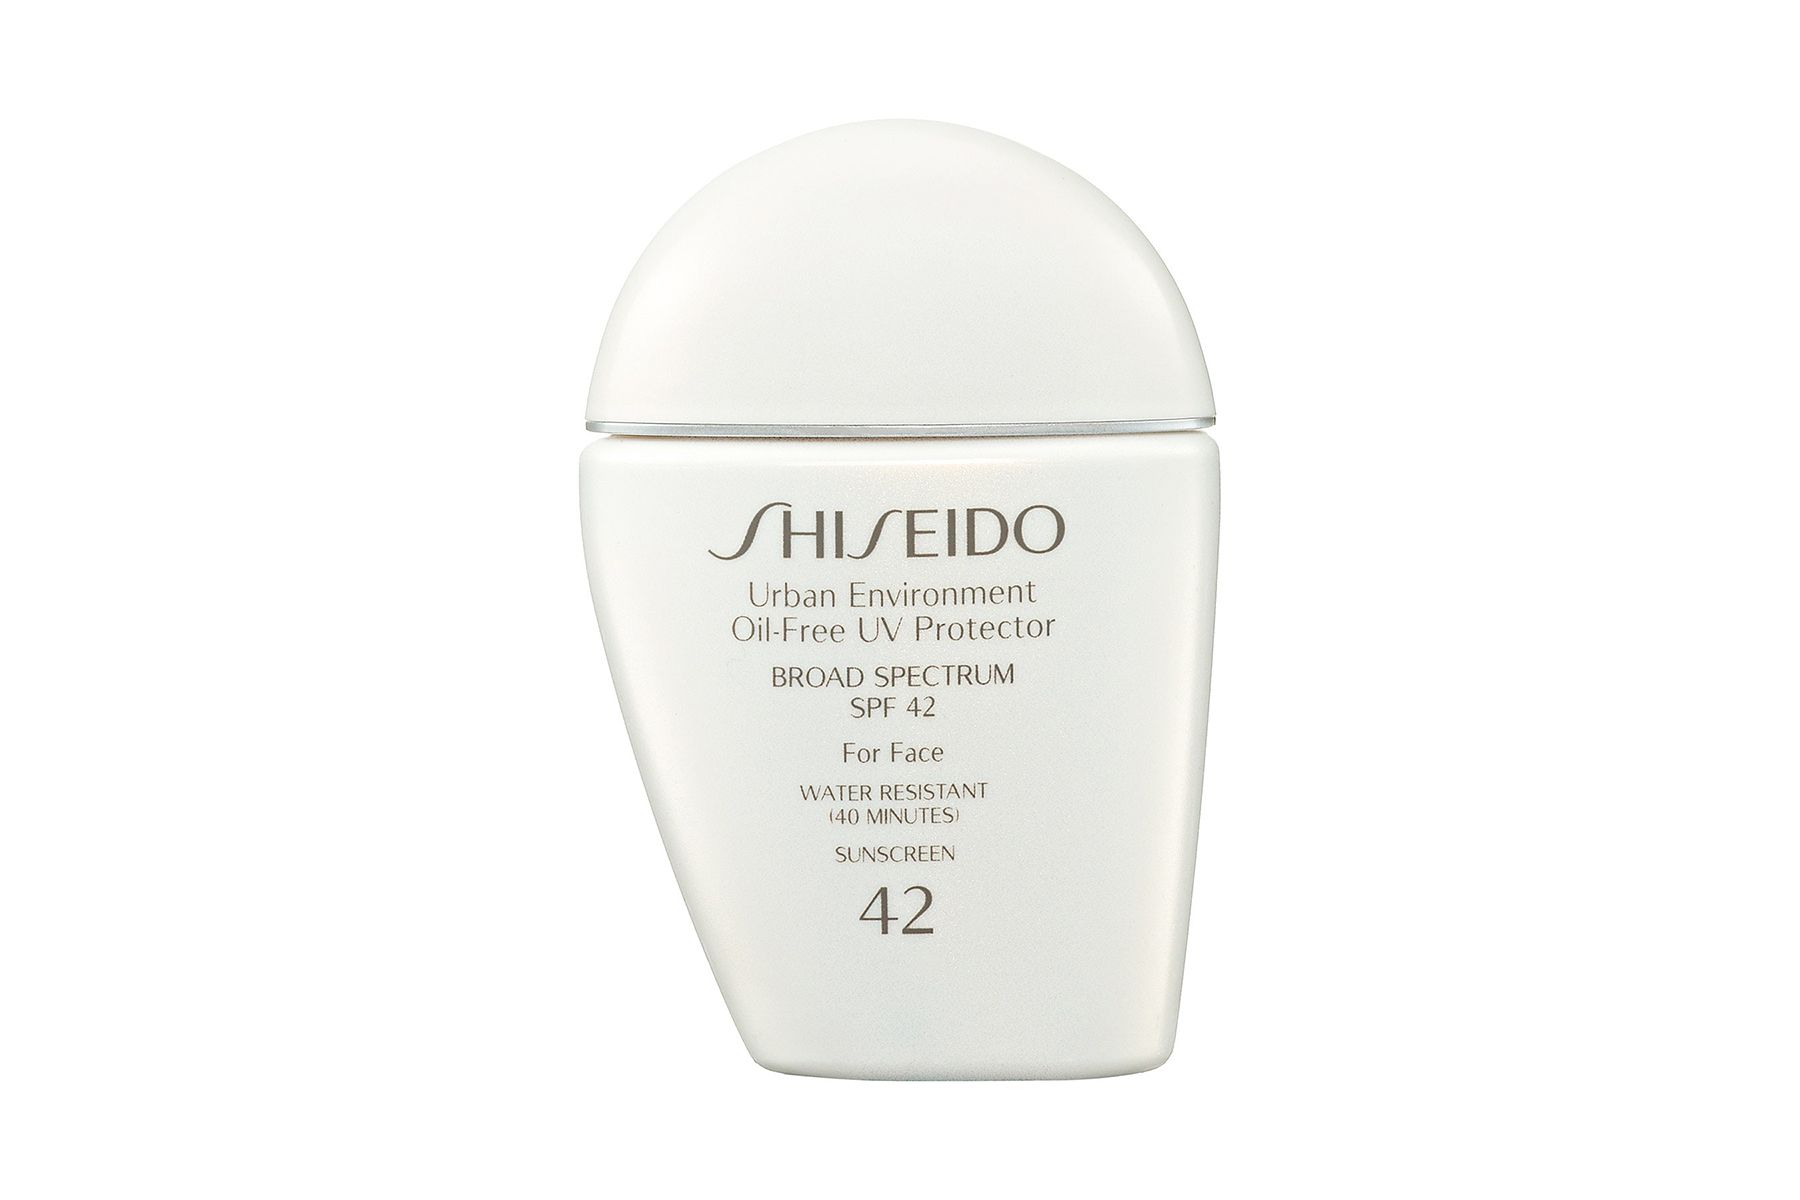 Shiseido Urban Environment olievrije zonnebrandcrème met breed spectrum voor het gezicht